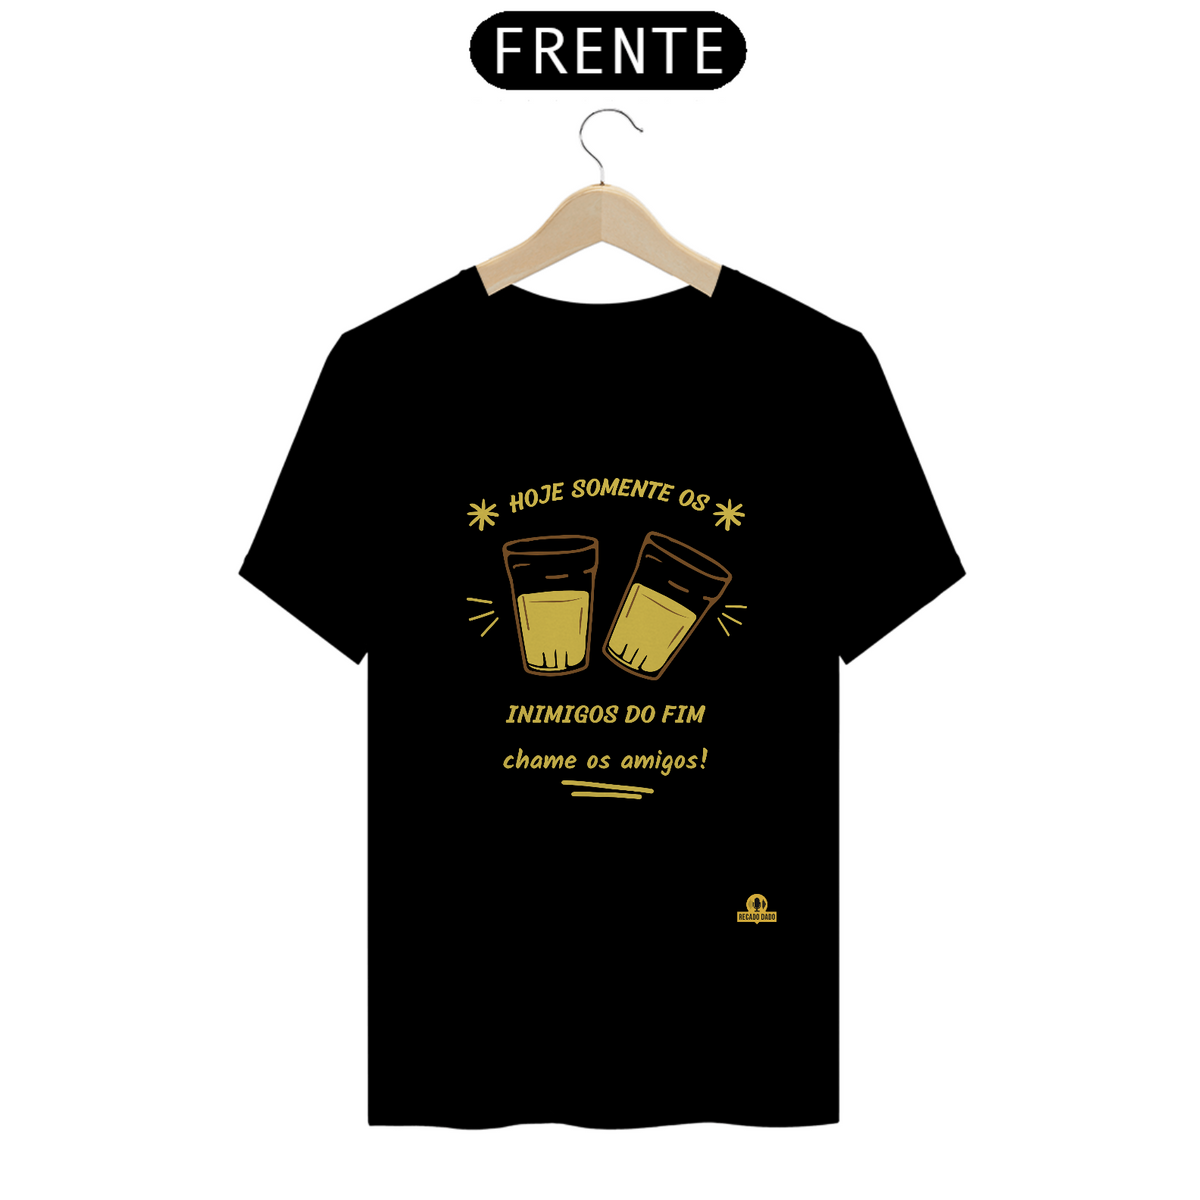 Nome do produto: Camiseta “Hoje somente os Inimigos do Fim, chame os amigos”, com imagem de copos americanos brindando.